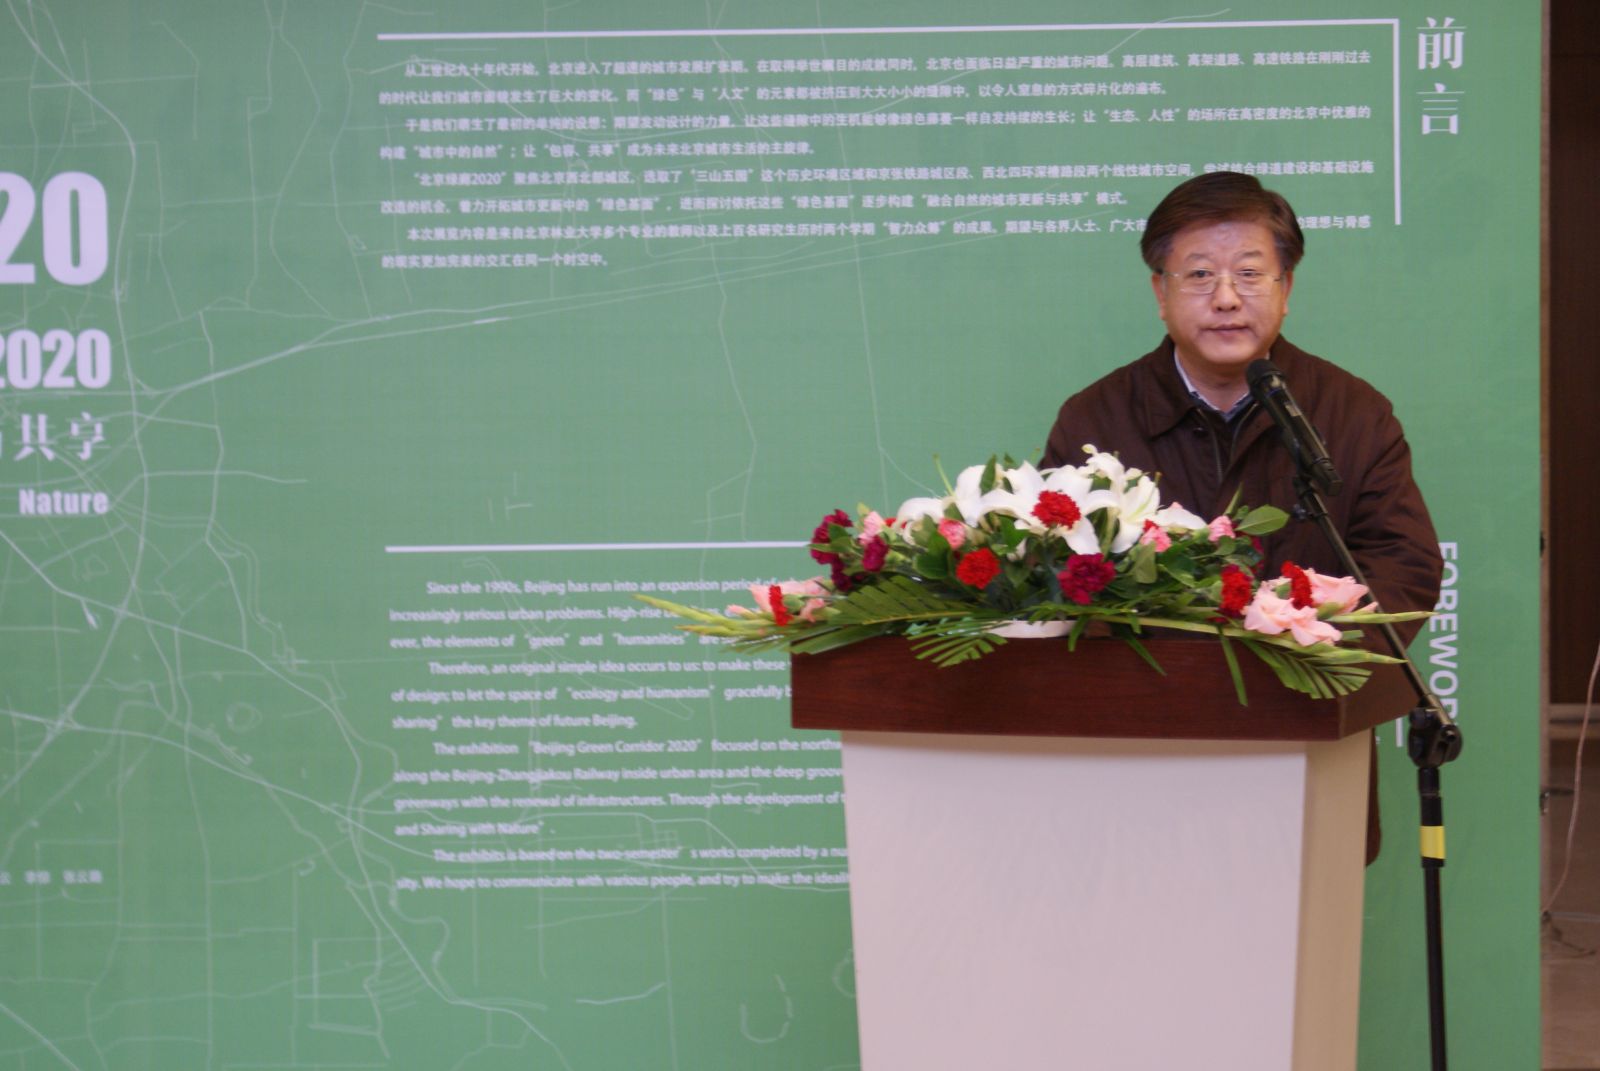 北京绿廊2020设计展（暨历届首高论坛回顾展）开幕